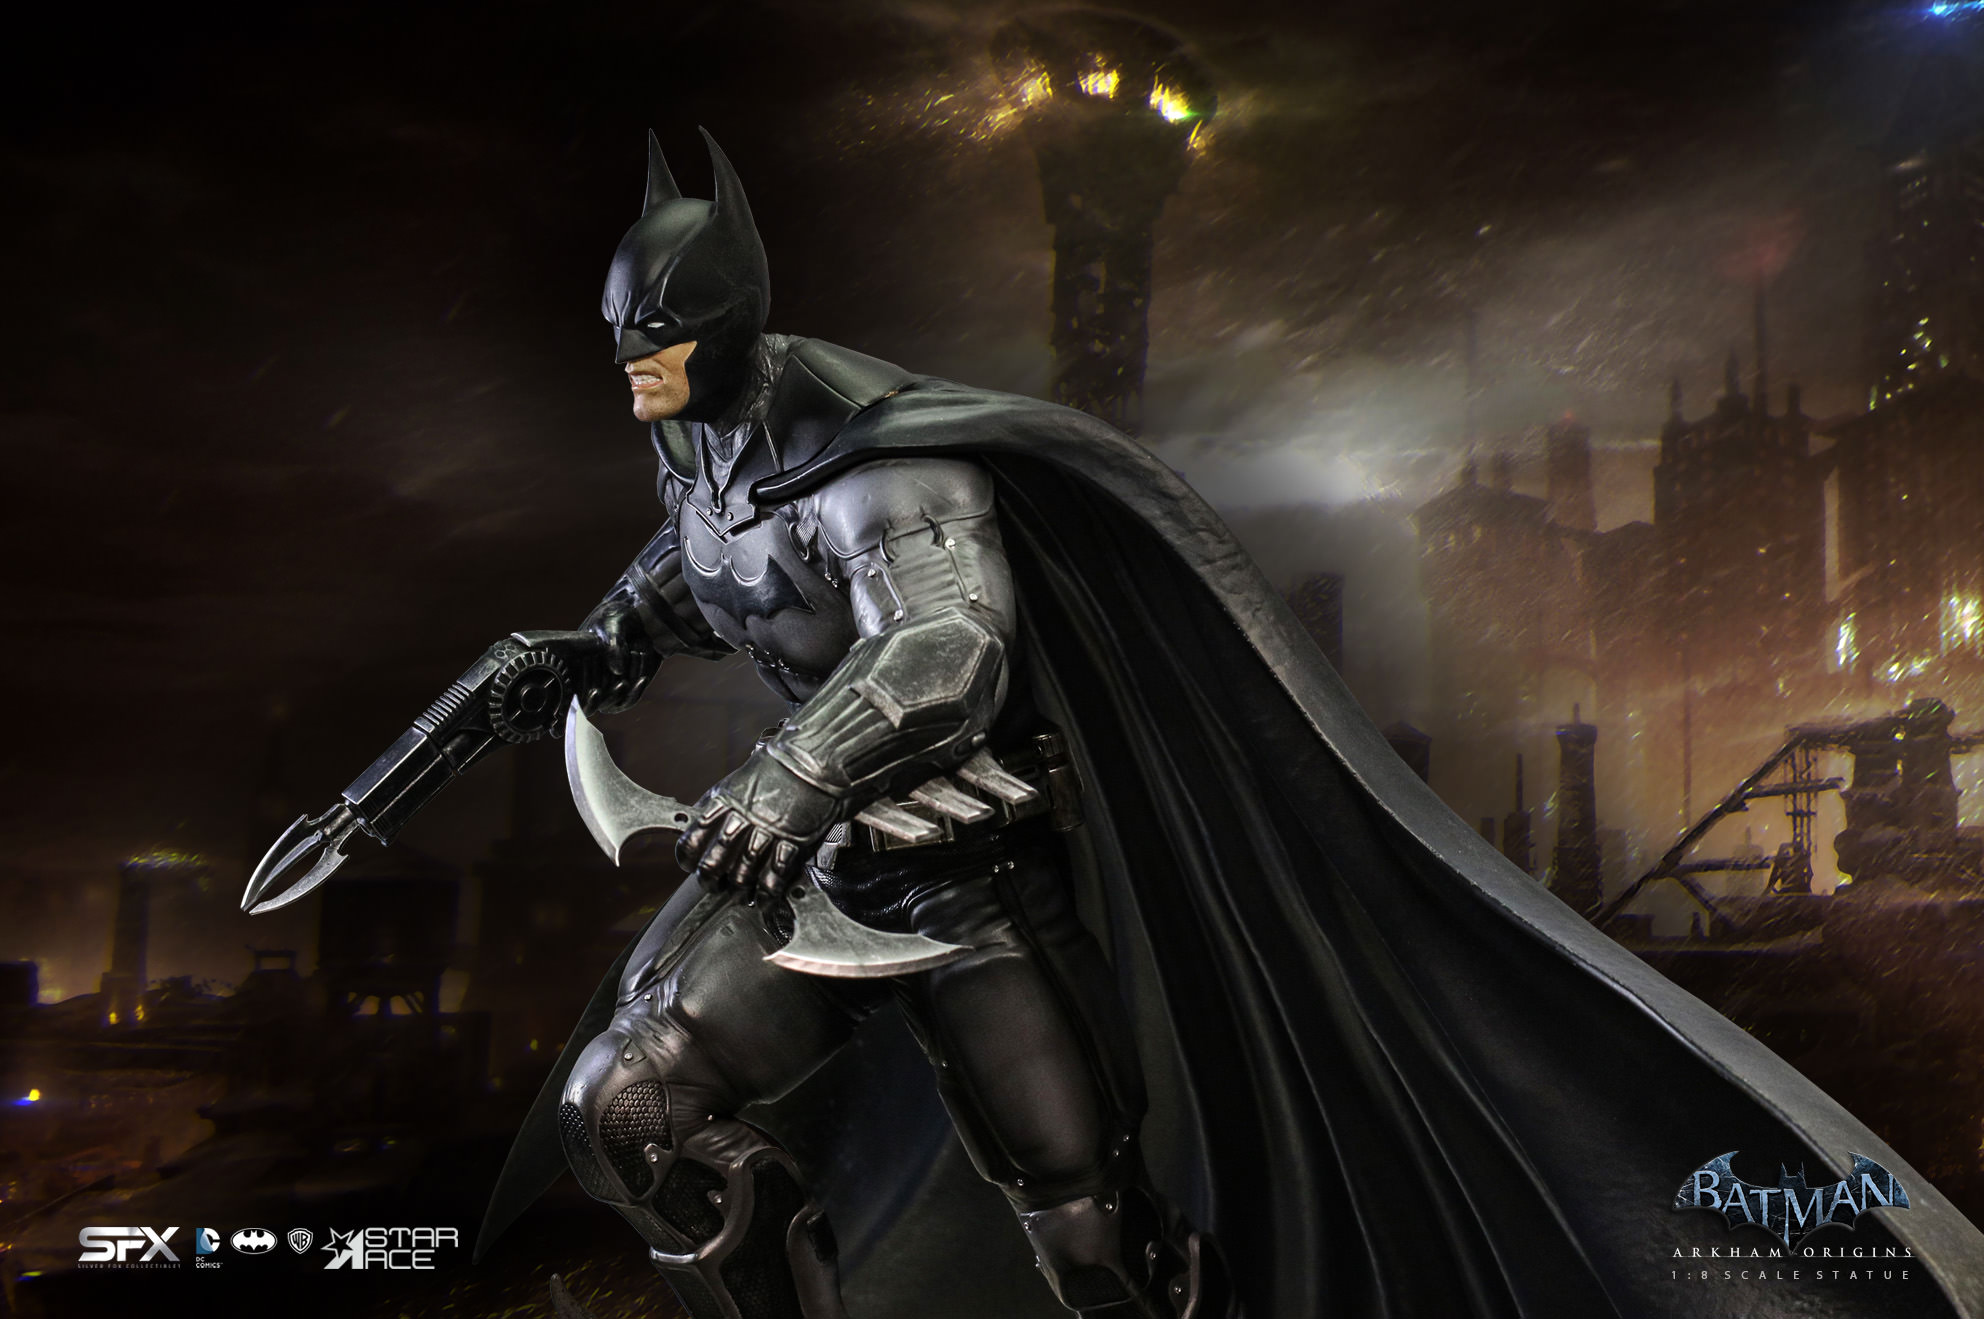 Batman Arkham Origins Exclusive Edition (Prototype Shown) View 19